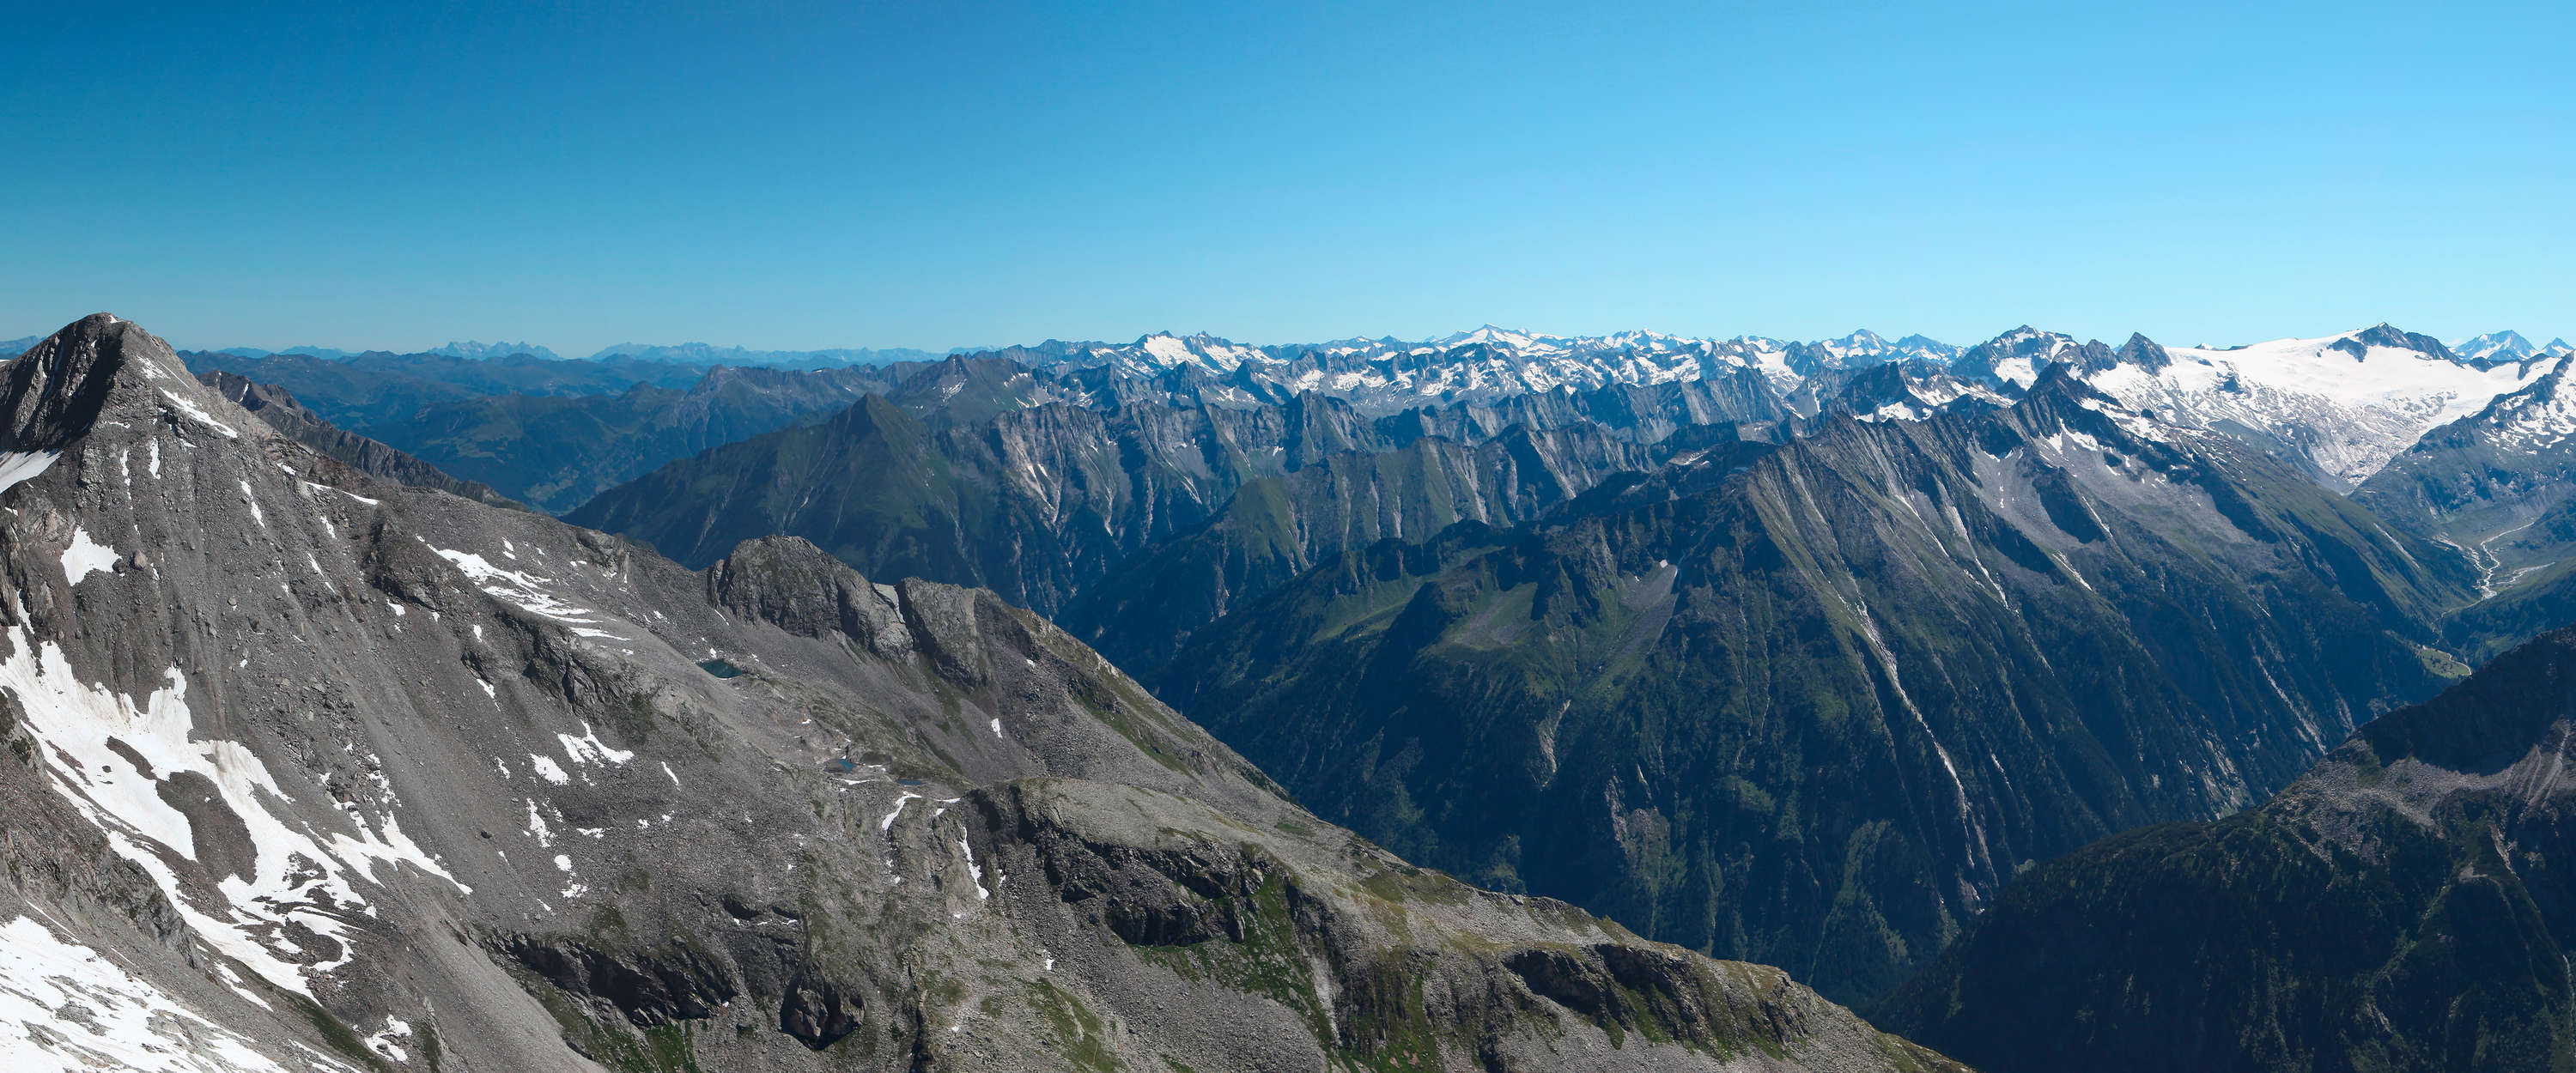             Papier peint panoramique panoramique avec les montagnes alpines déchiquetées
        